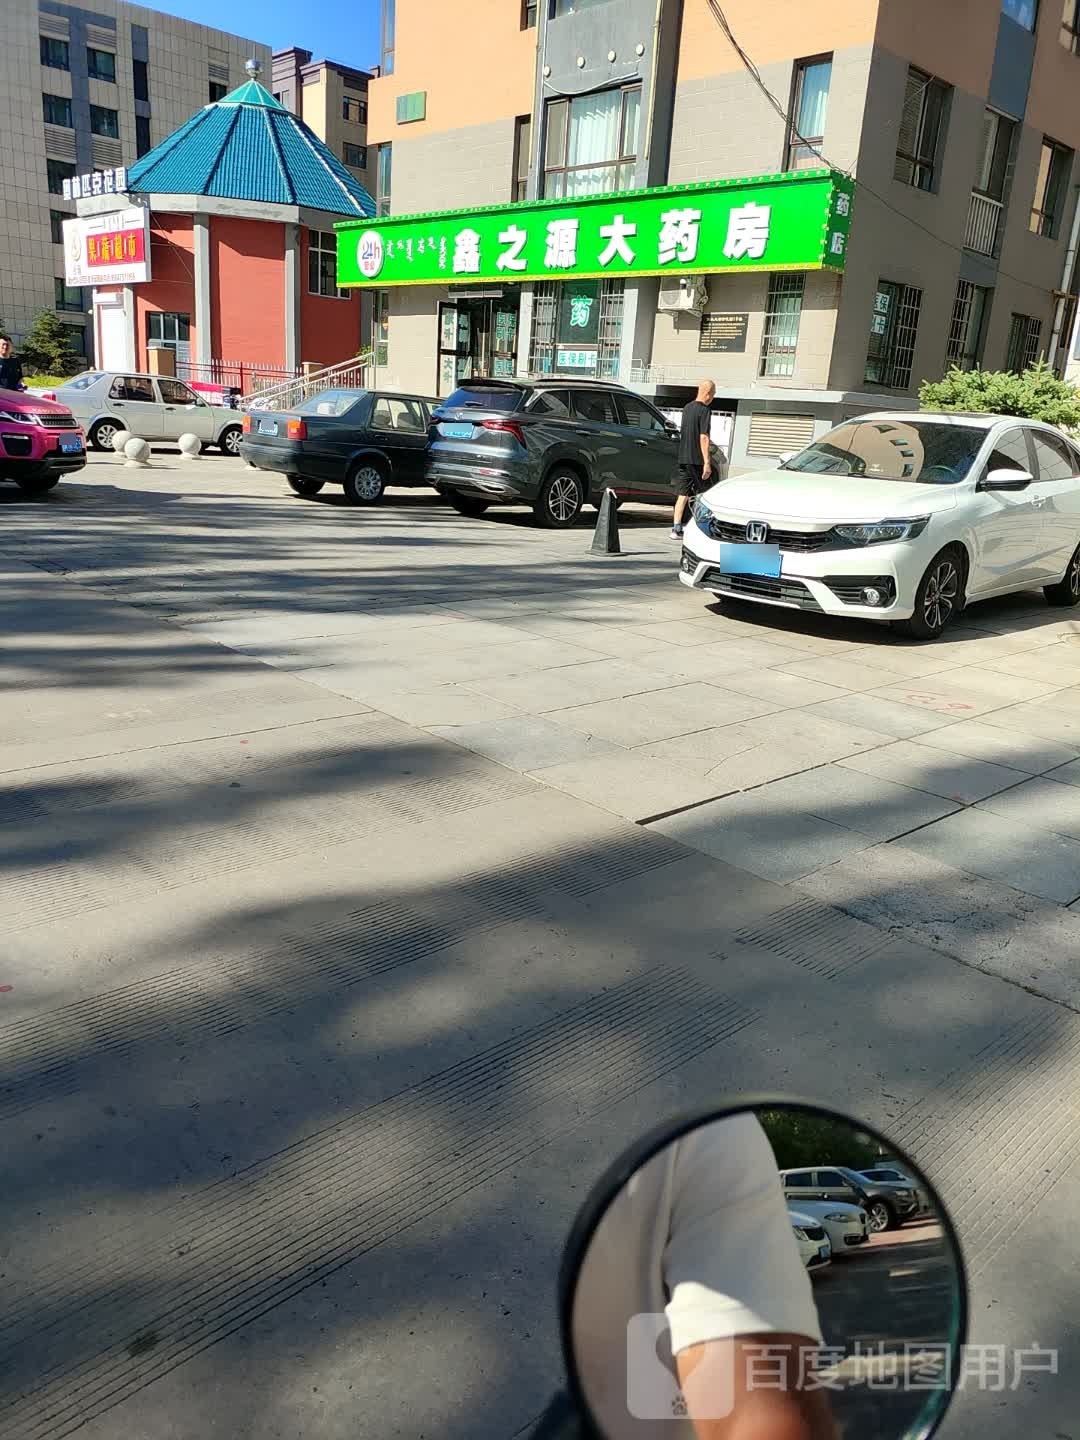 鑫之源大药店